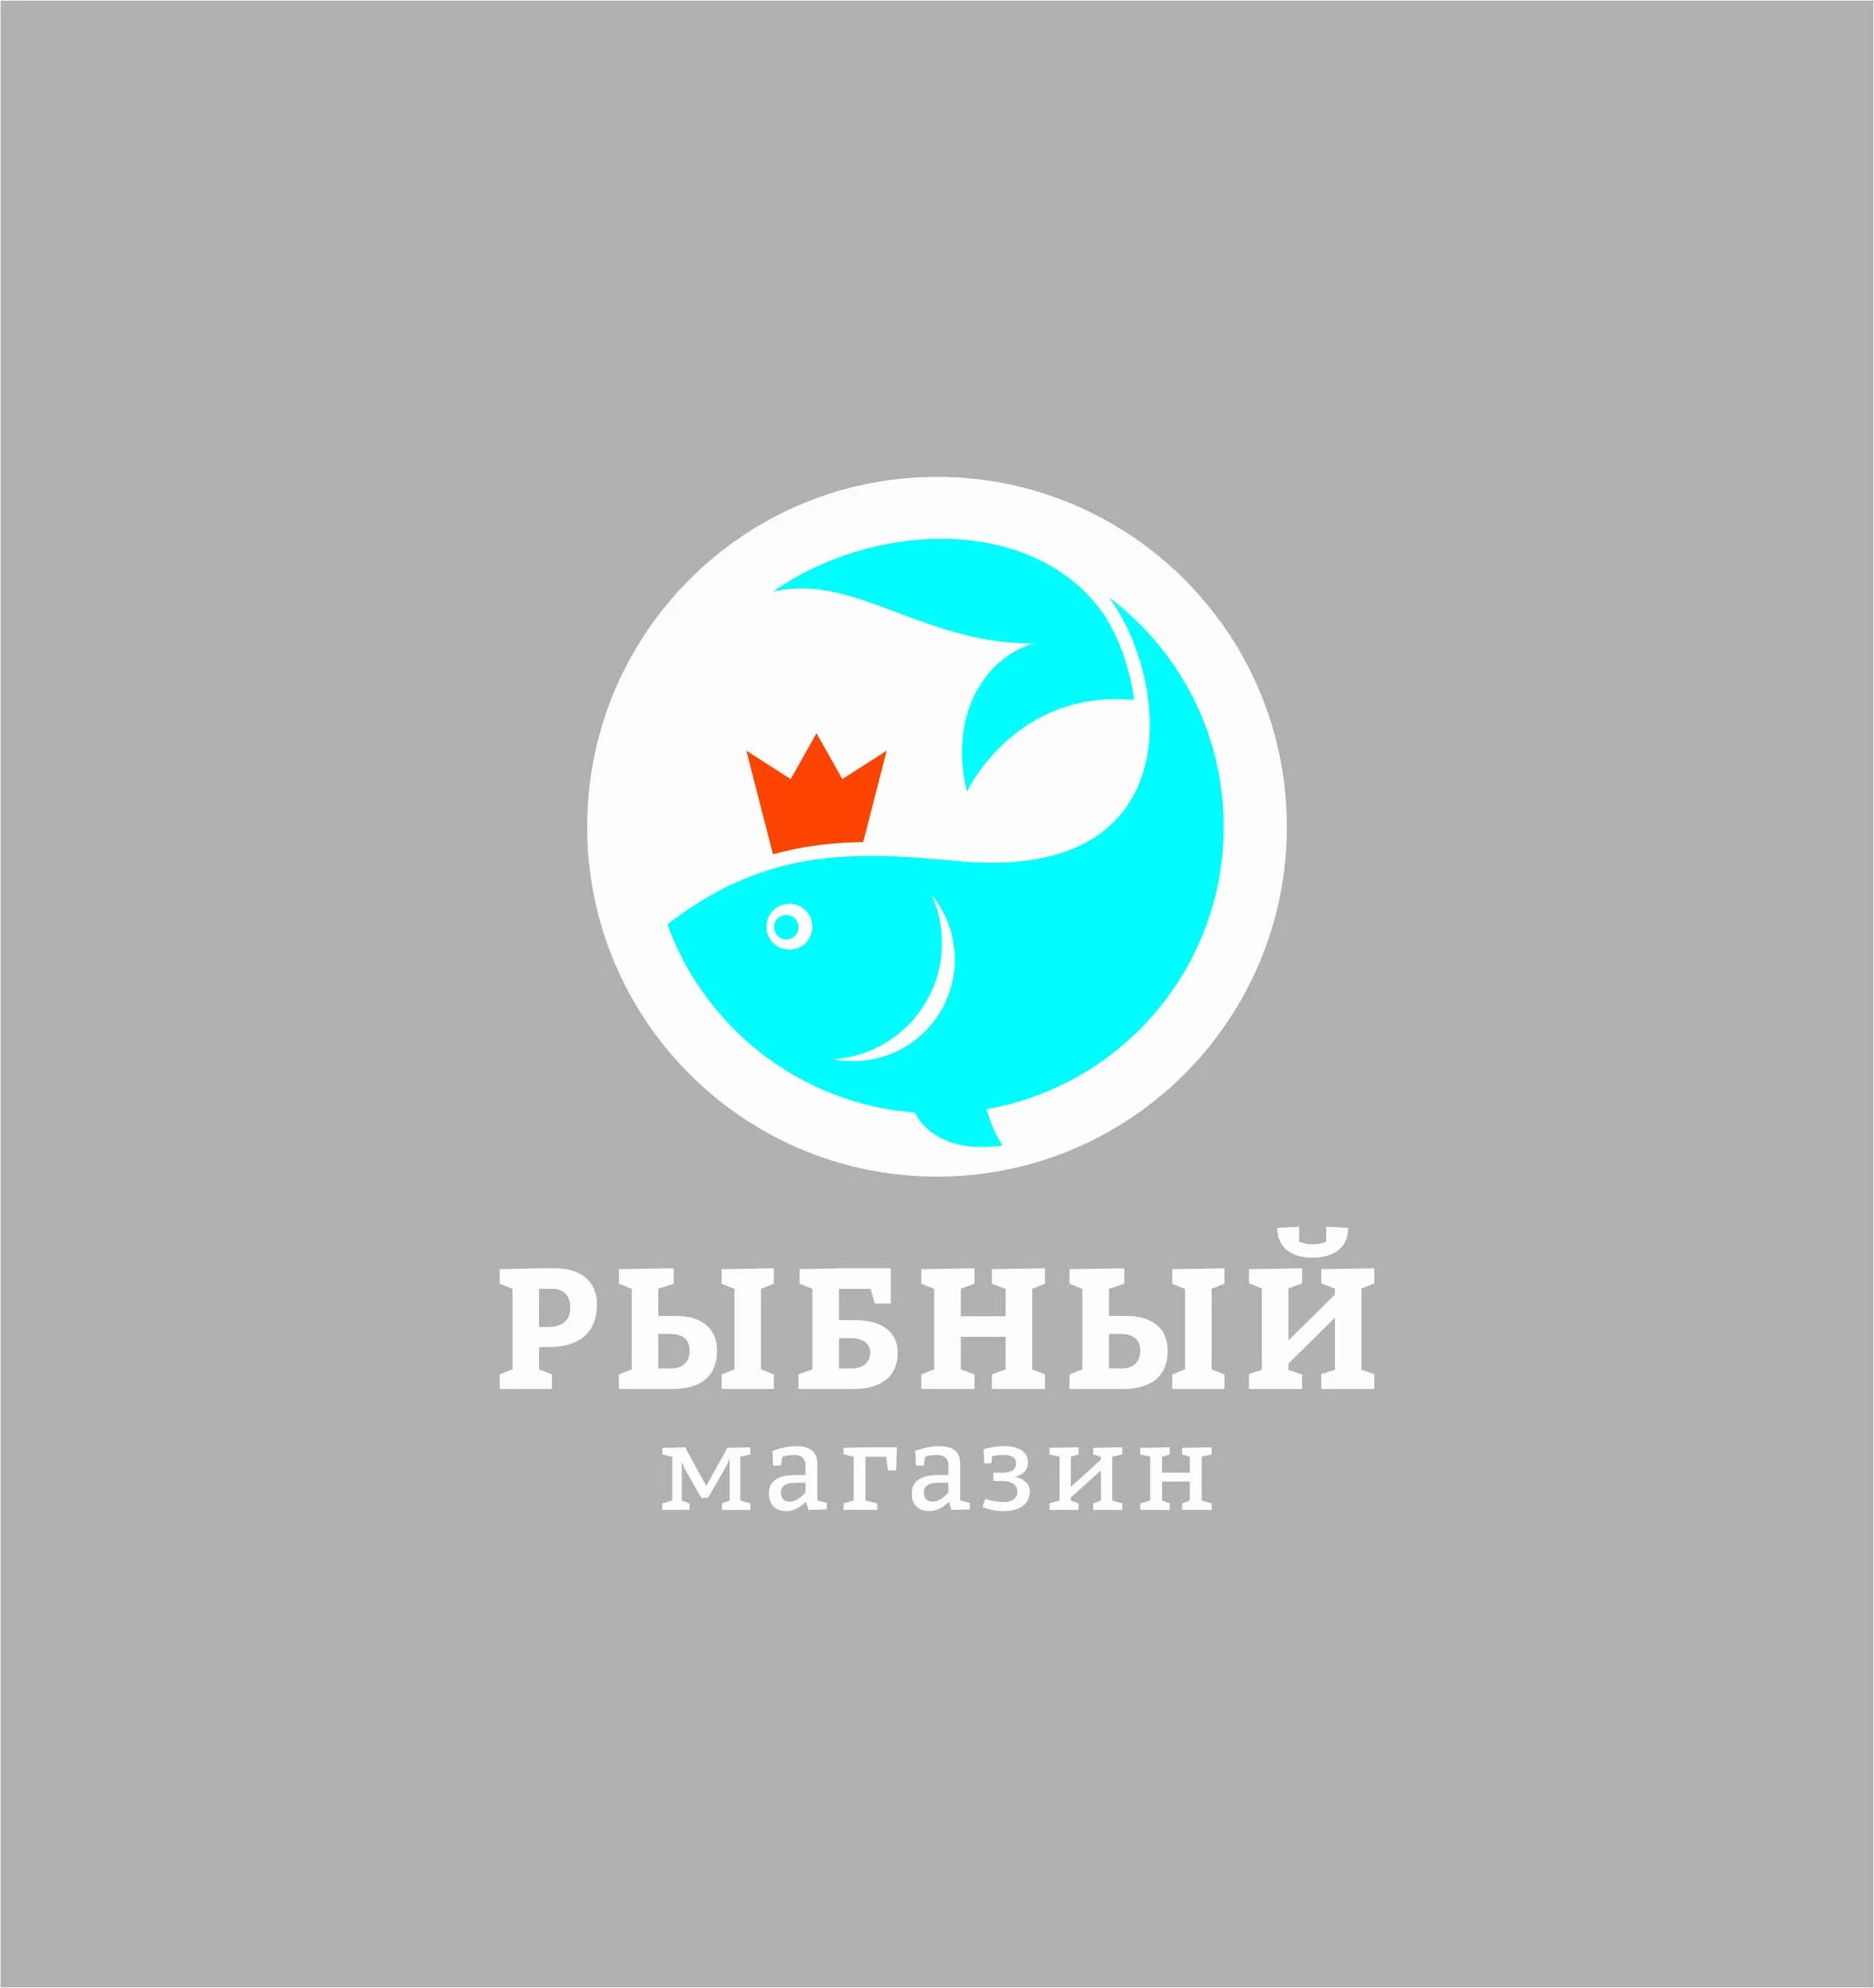 Сайт рыбный день новосибирске. Рыбный магазин Новосибирск. Рыбный мир Новосибирск. Рыбный день Новосибирск.